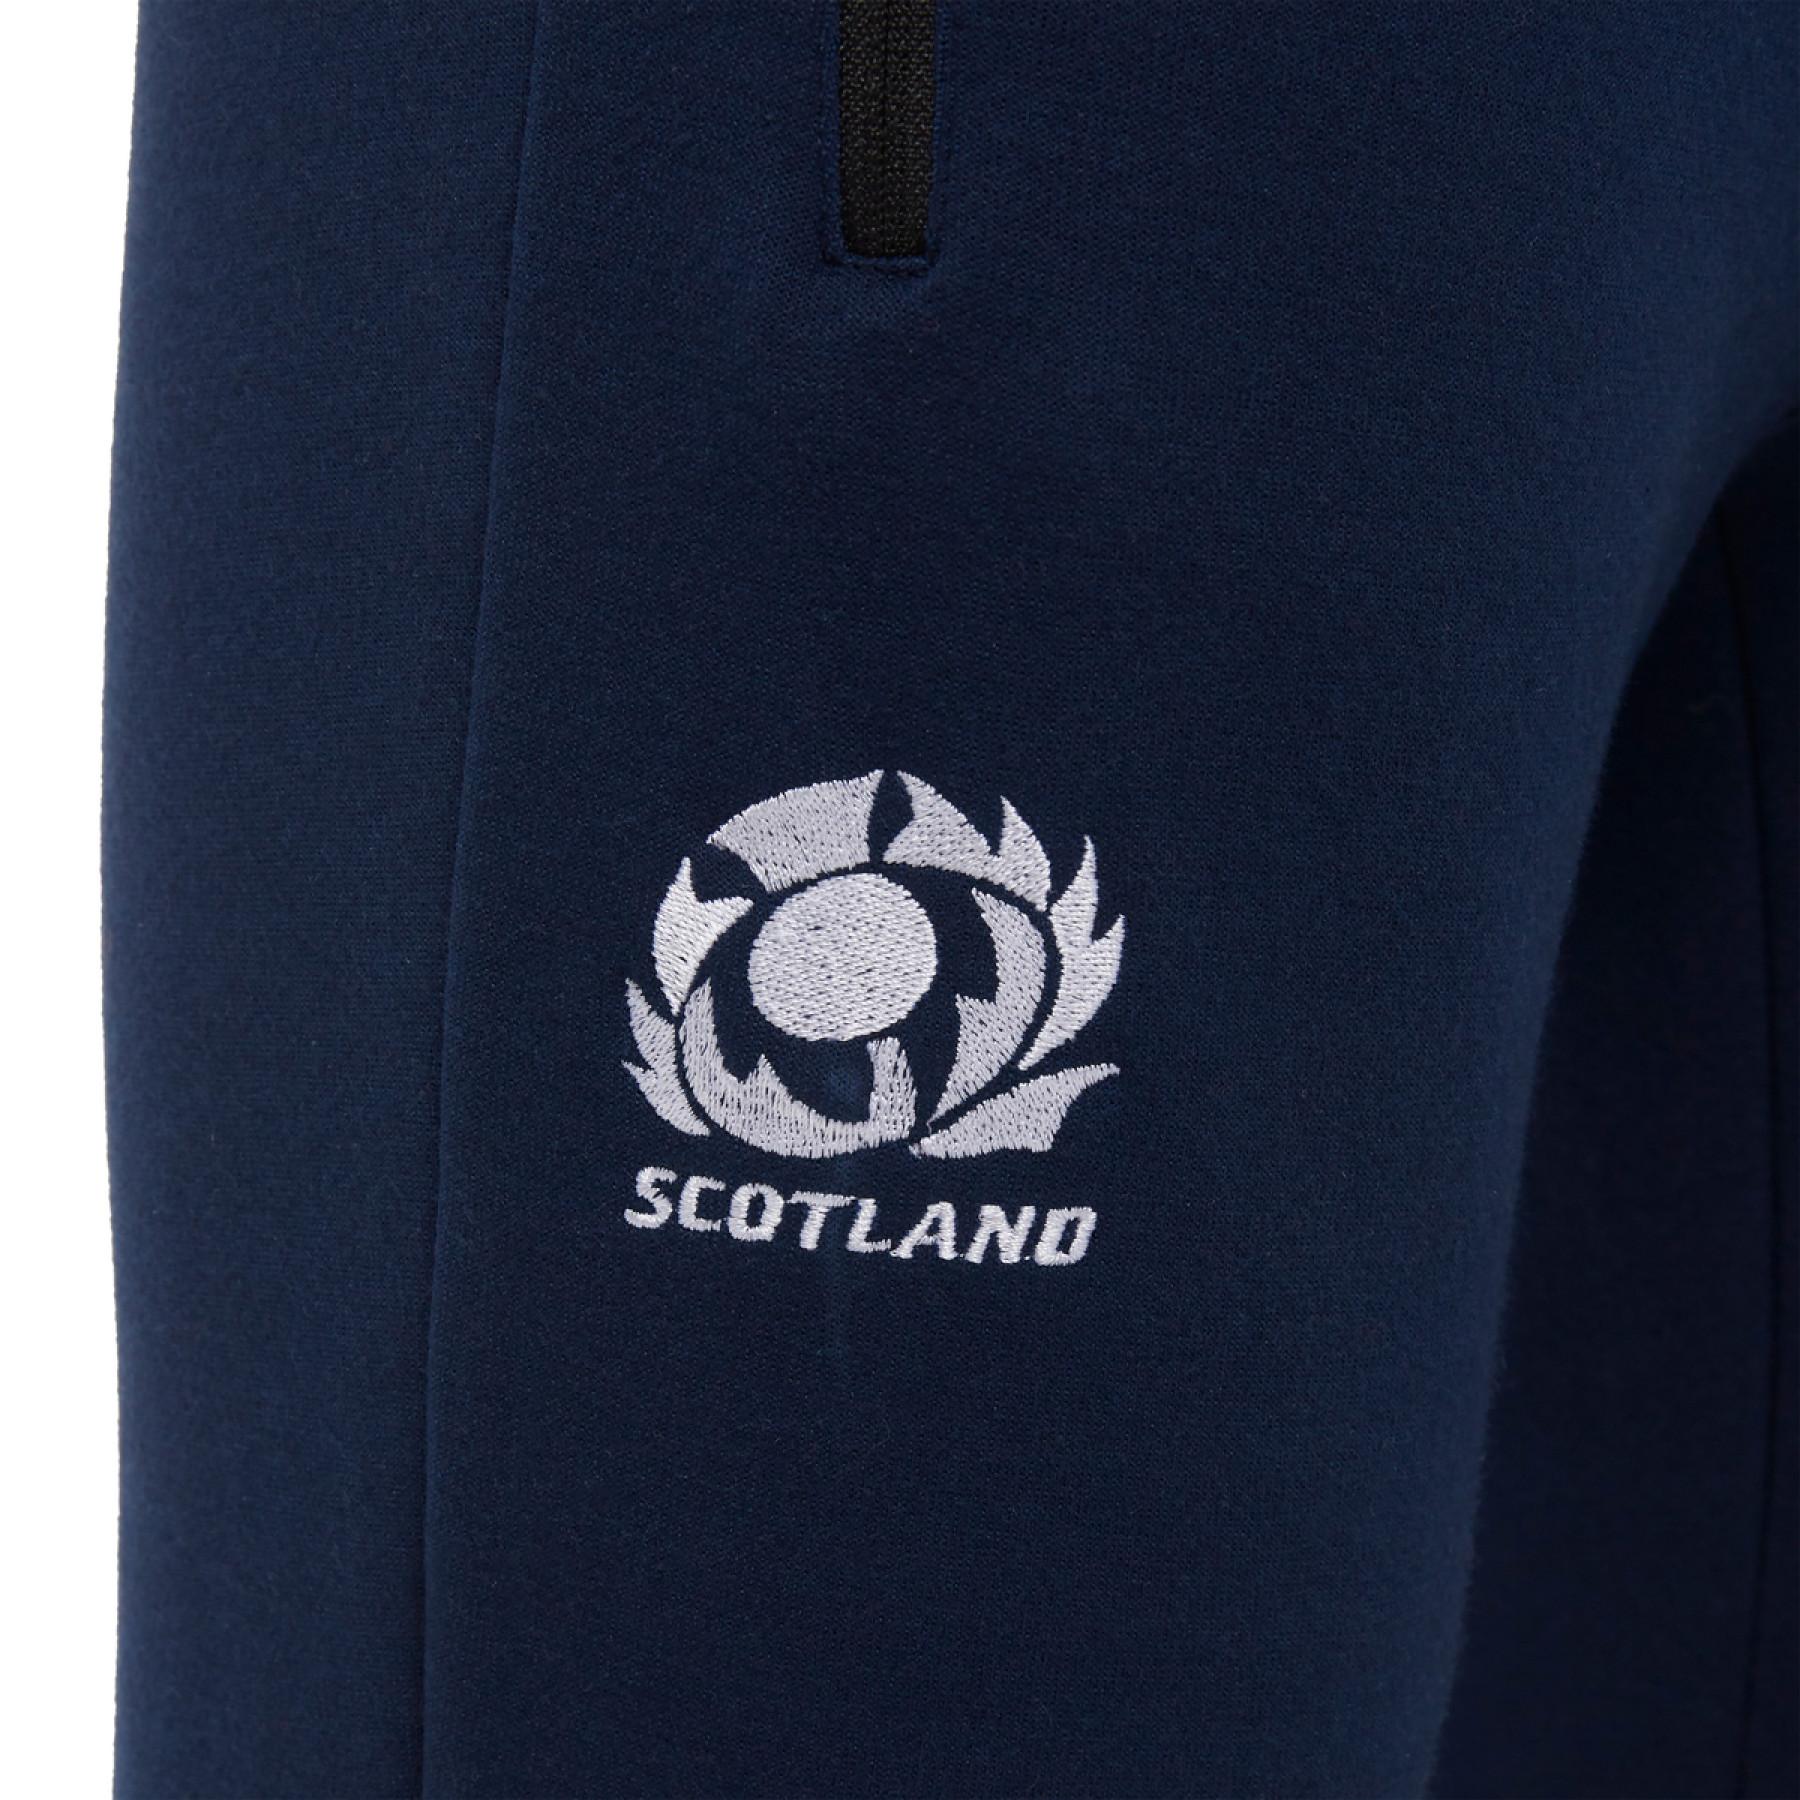 Rugbyhose aus Baumwolle für Frauen Schottland 2020/21